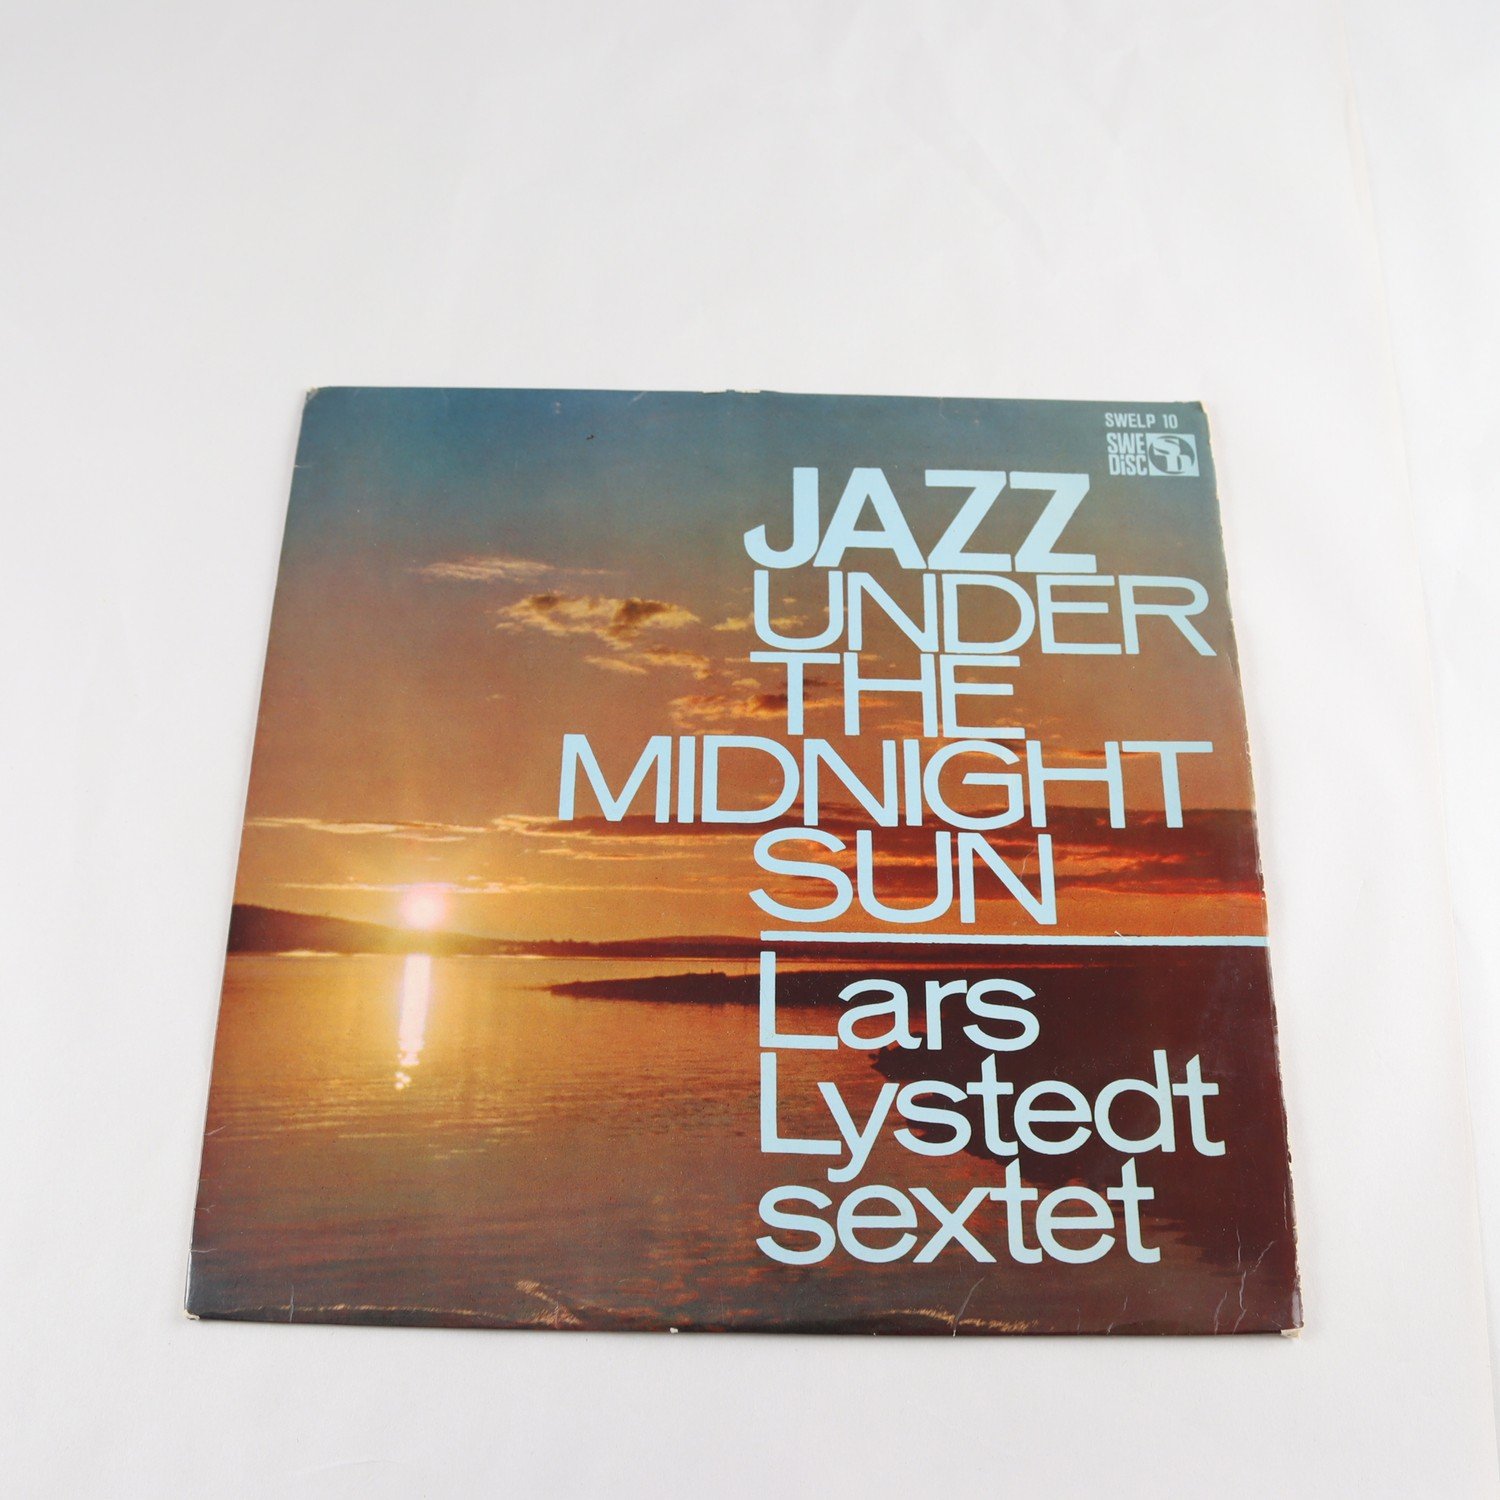 Lars Nystedt sextet Jazz under the midnight sun LP